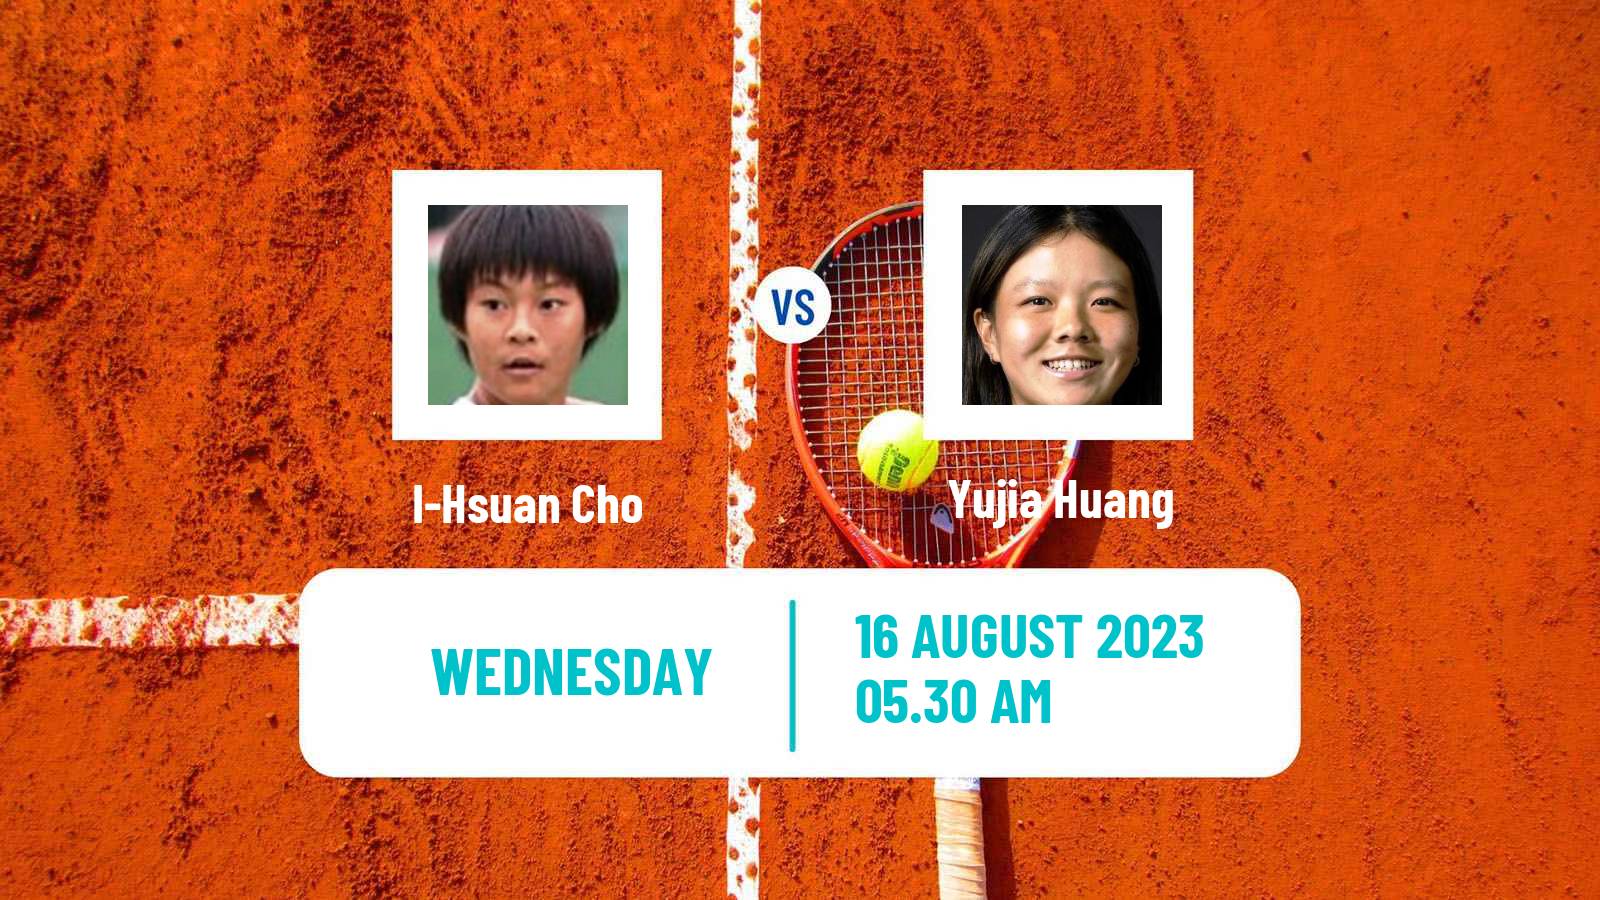 Tennis ITF W40 Nanchang Women I-Hsuan Cho - Yujia Huang